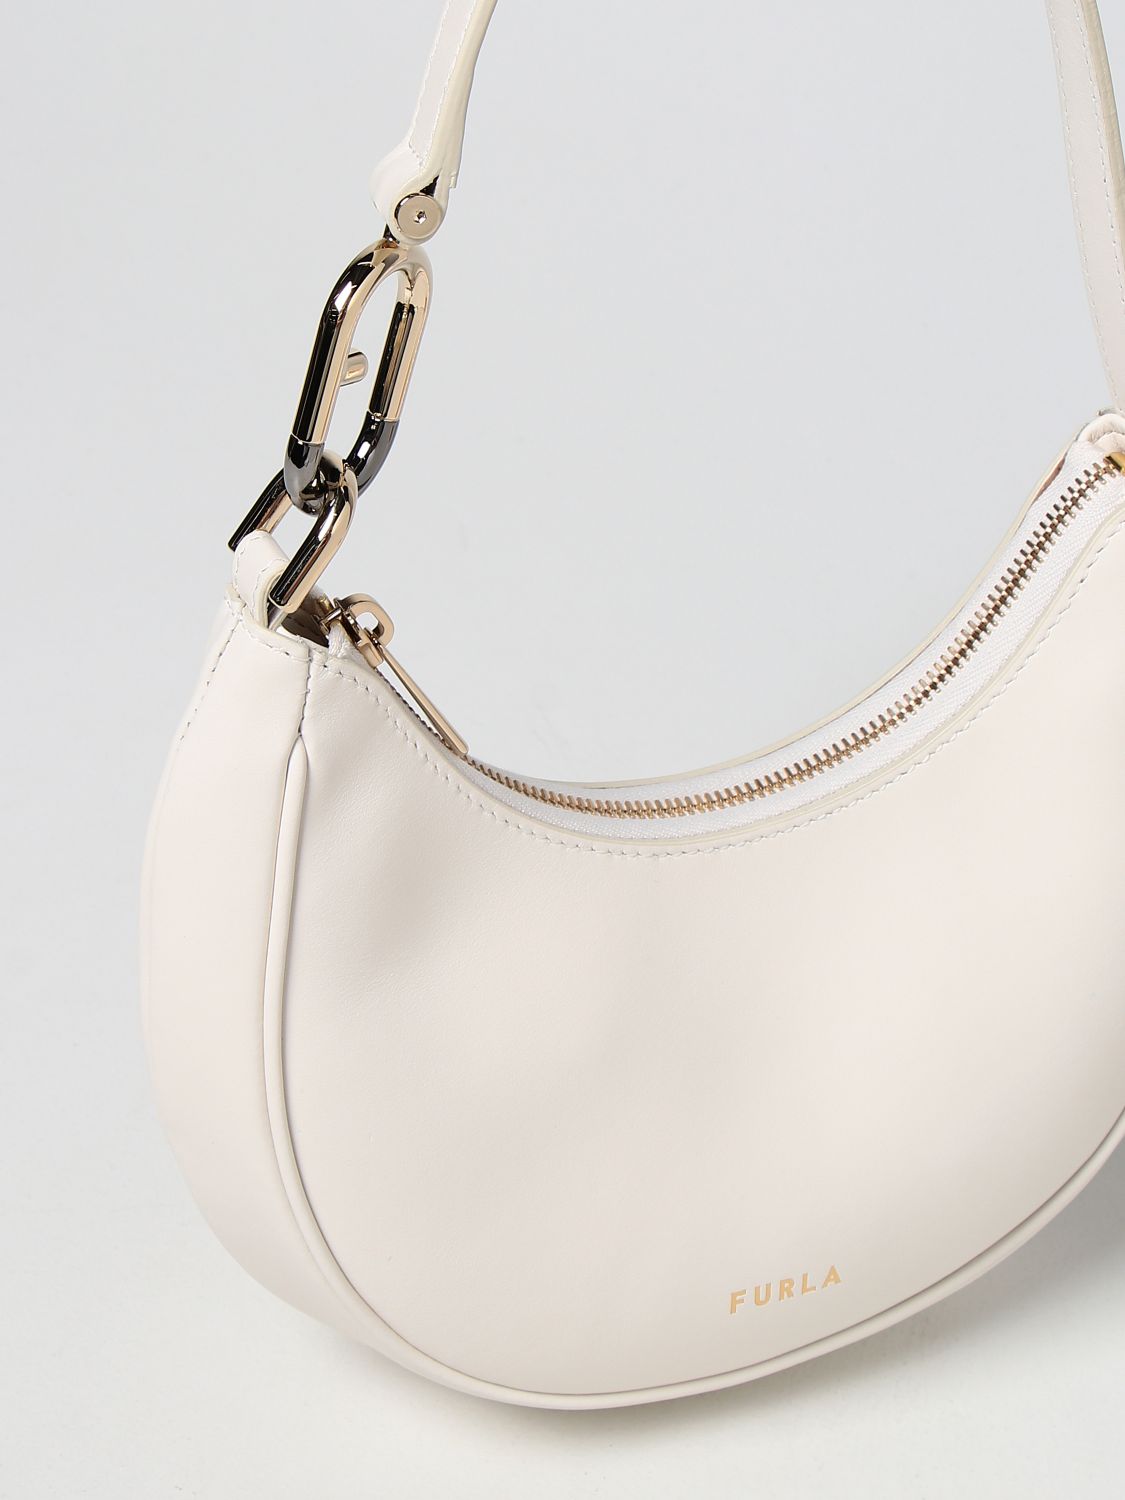 FURLA: Spring hobo bag in leather - Orange  Furla shoulder bag  WB00475AX0733 online at